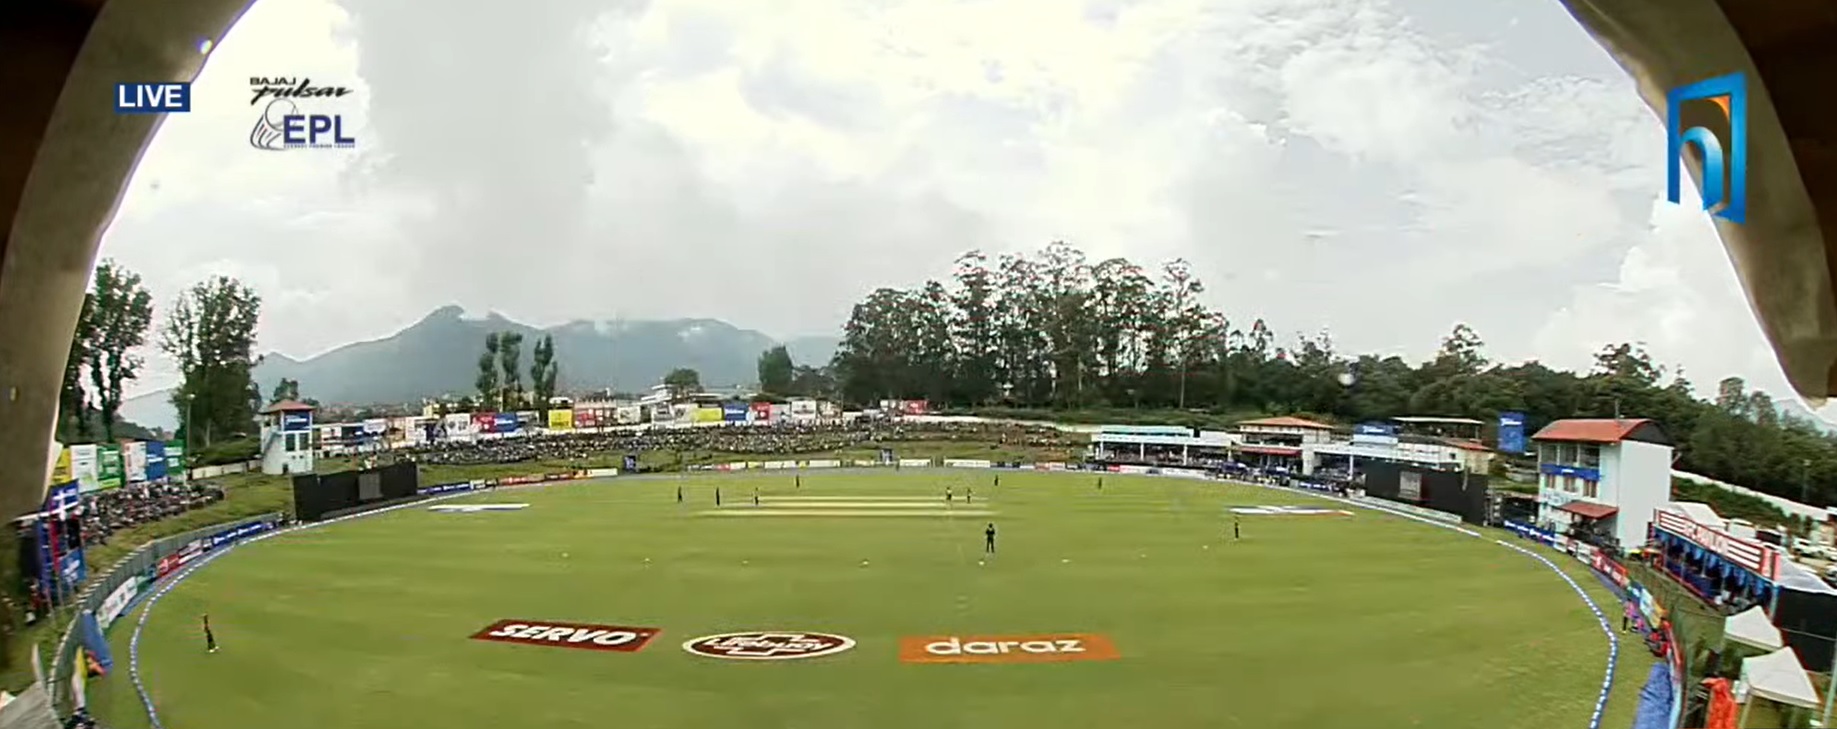 ईपीएलमा आज दुई खेल हुँदै, हिमालय टेलिभिजनमा प्रत्यक्ष हेर्न सकिने